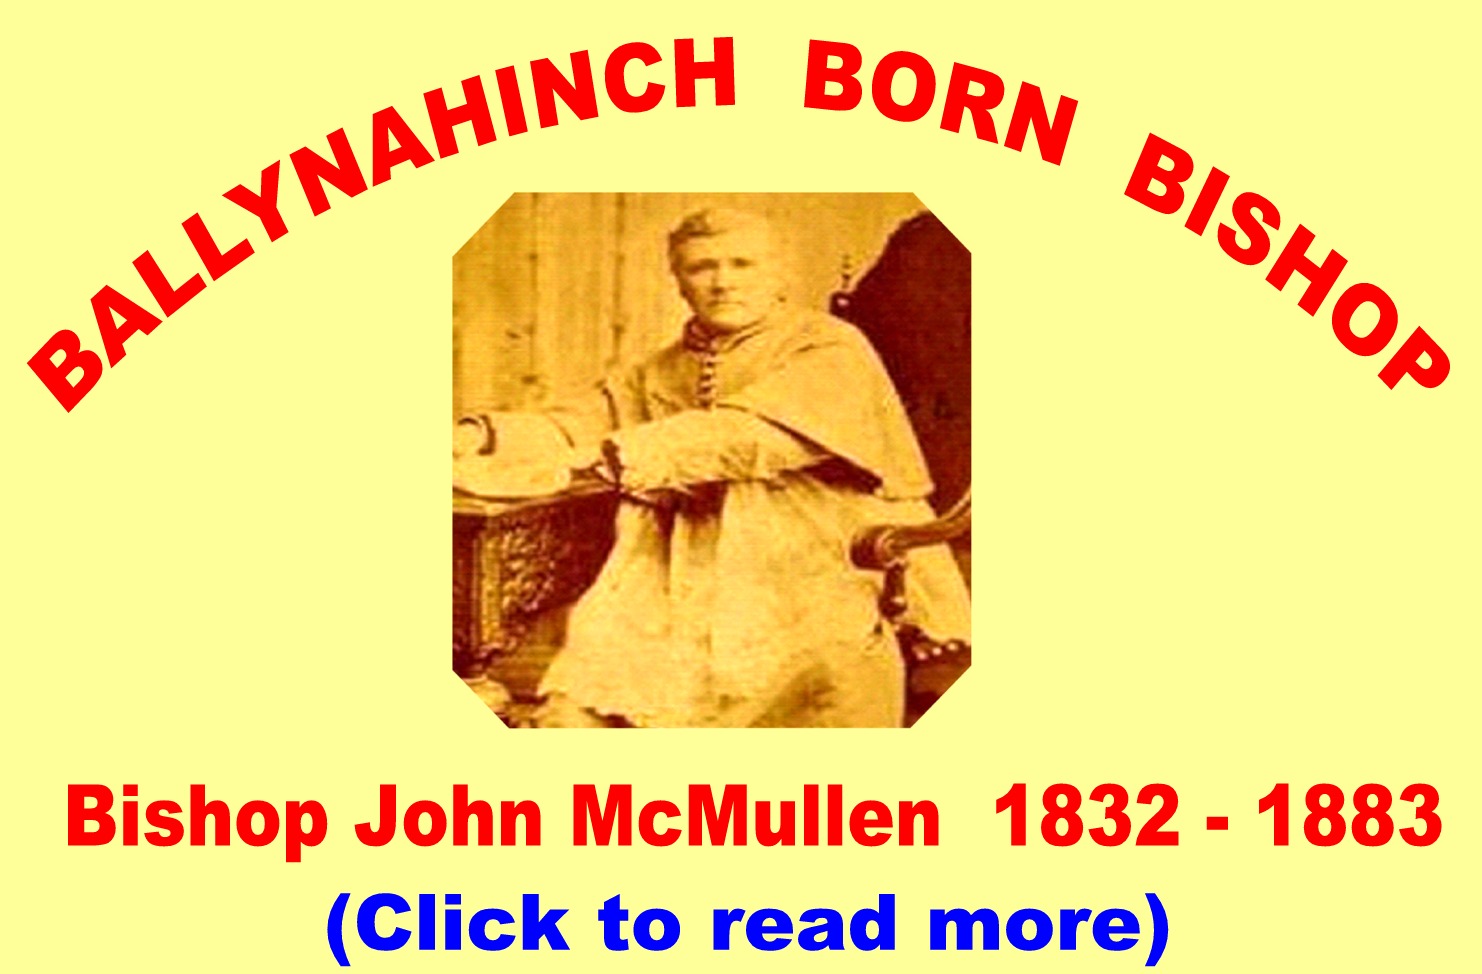 Ballynahinch Born Bishop